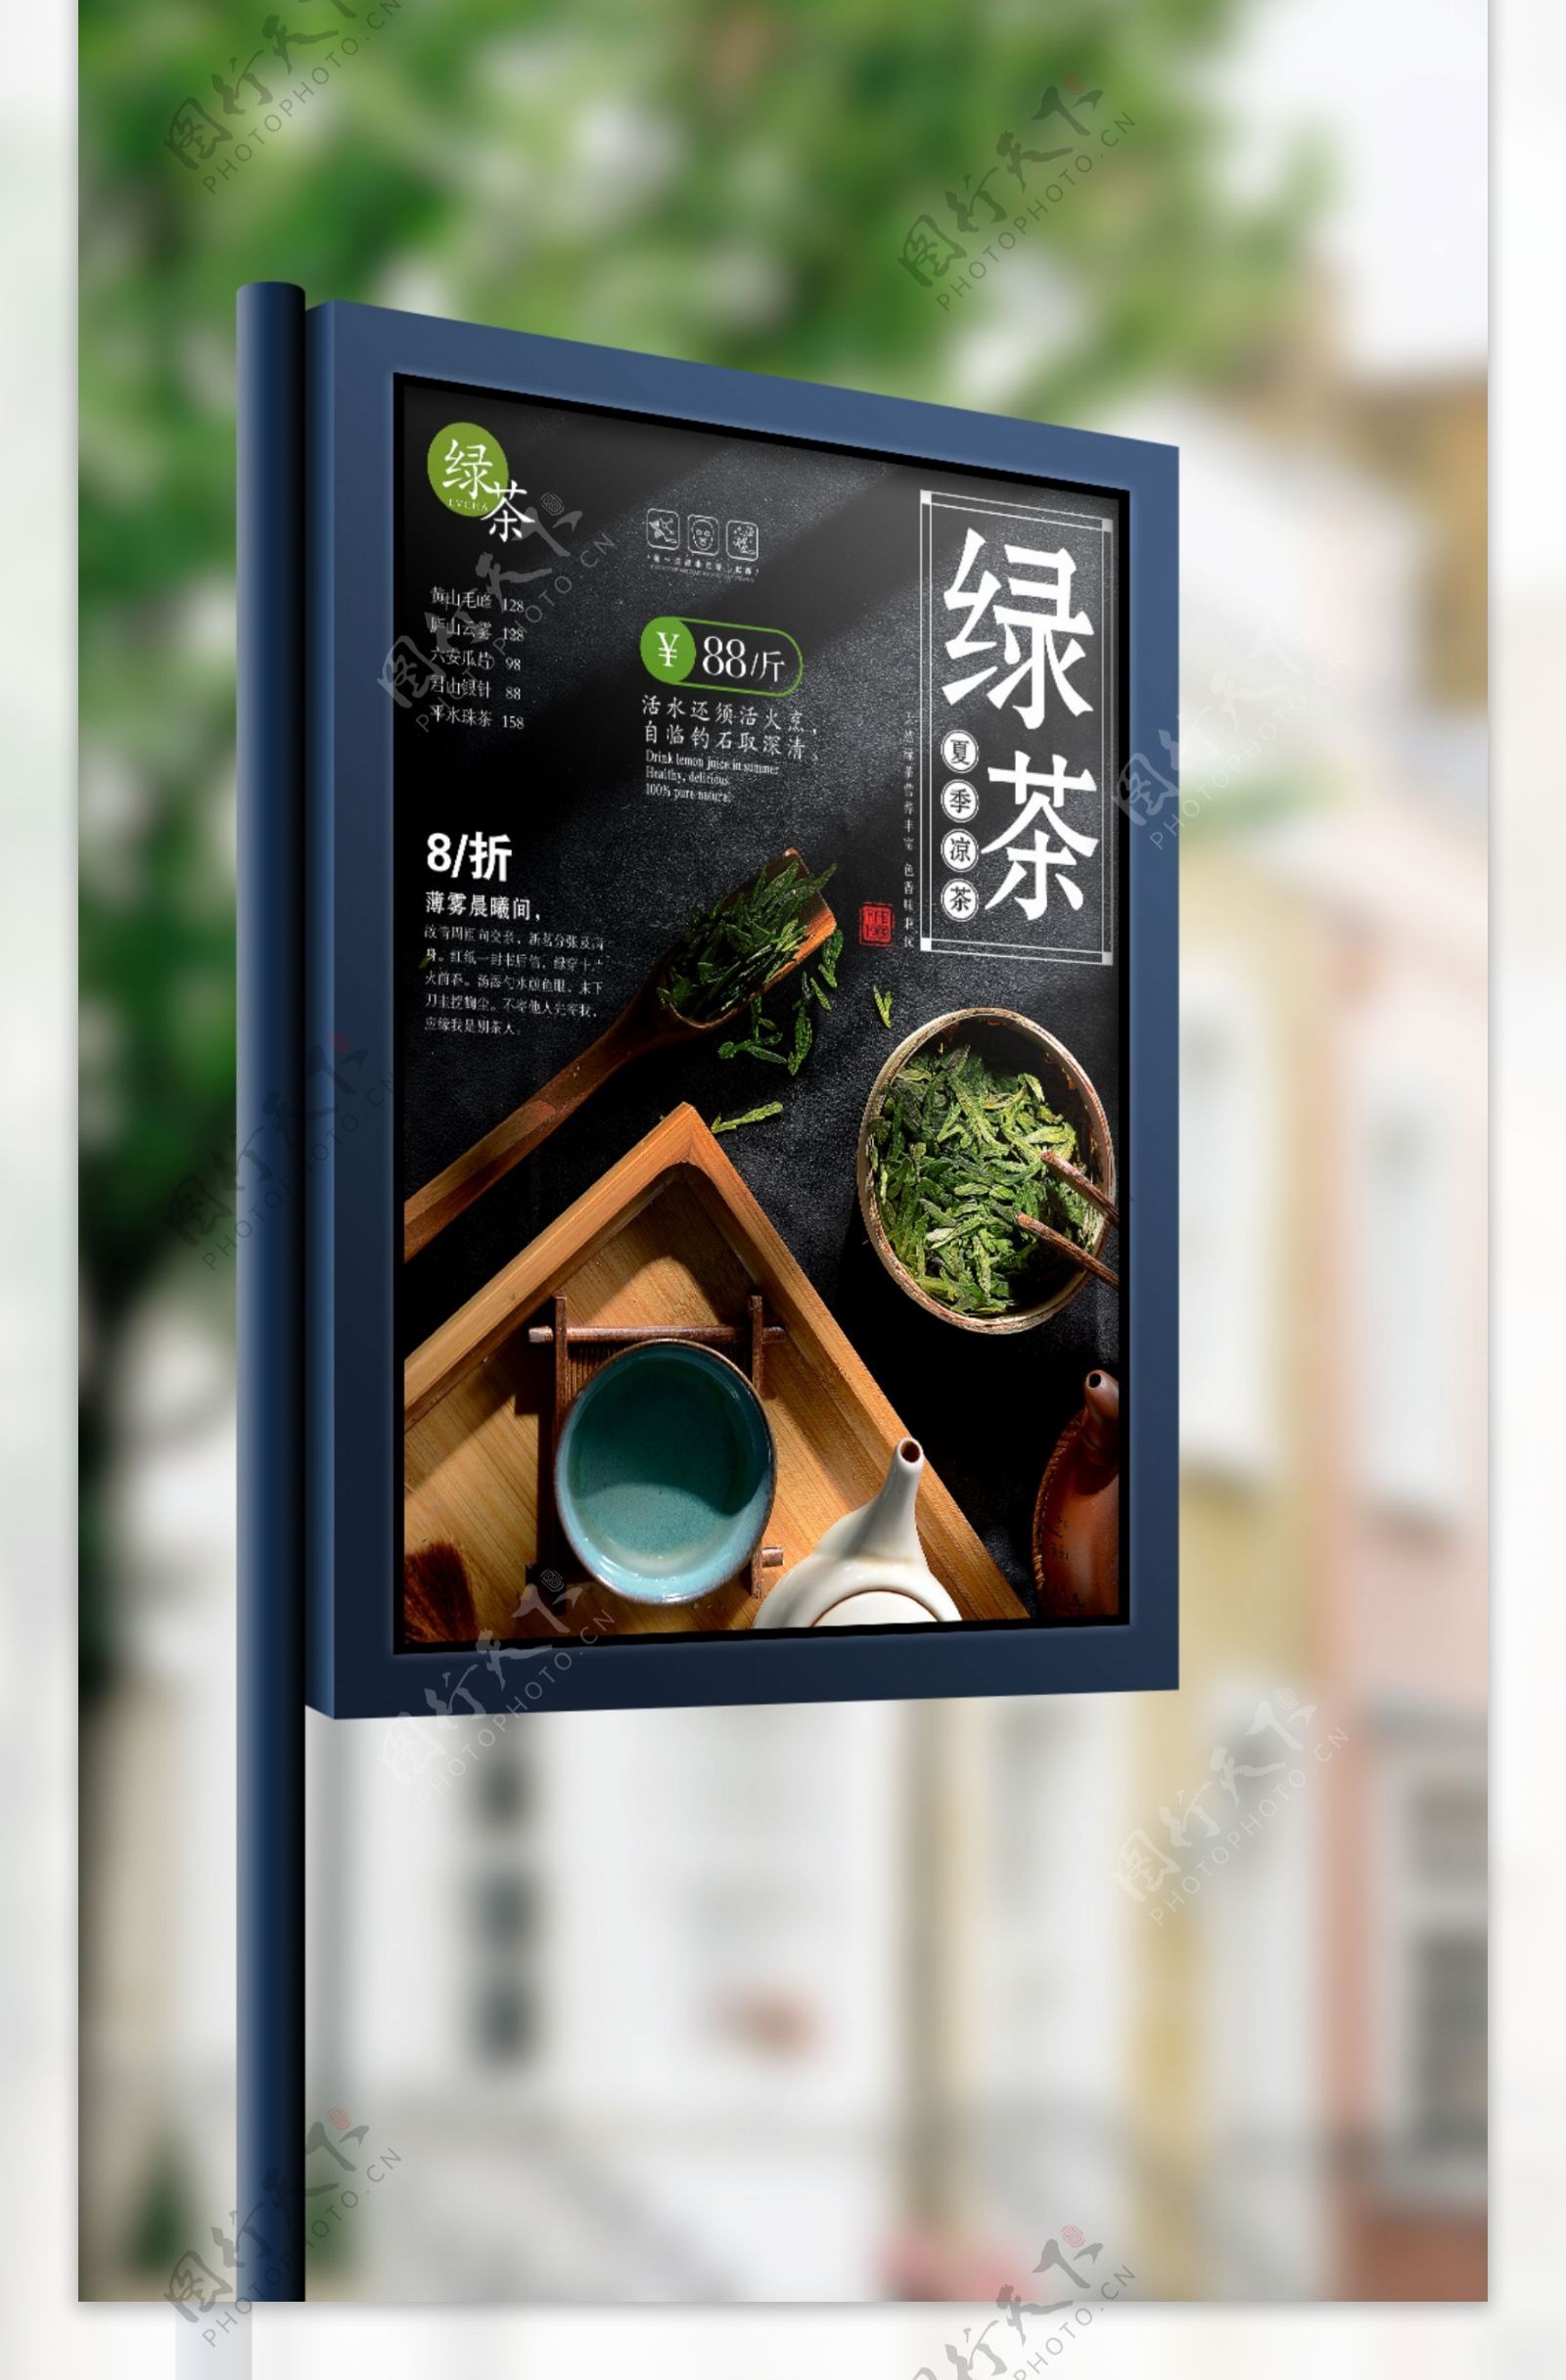 现代时尚高端茶叶新品上市海报设计